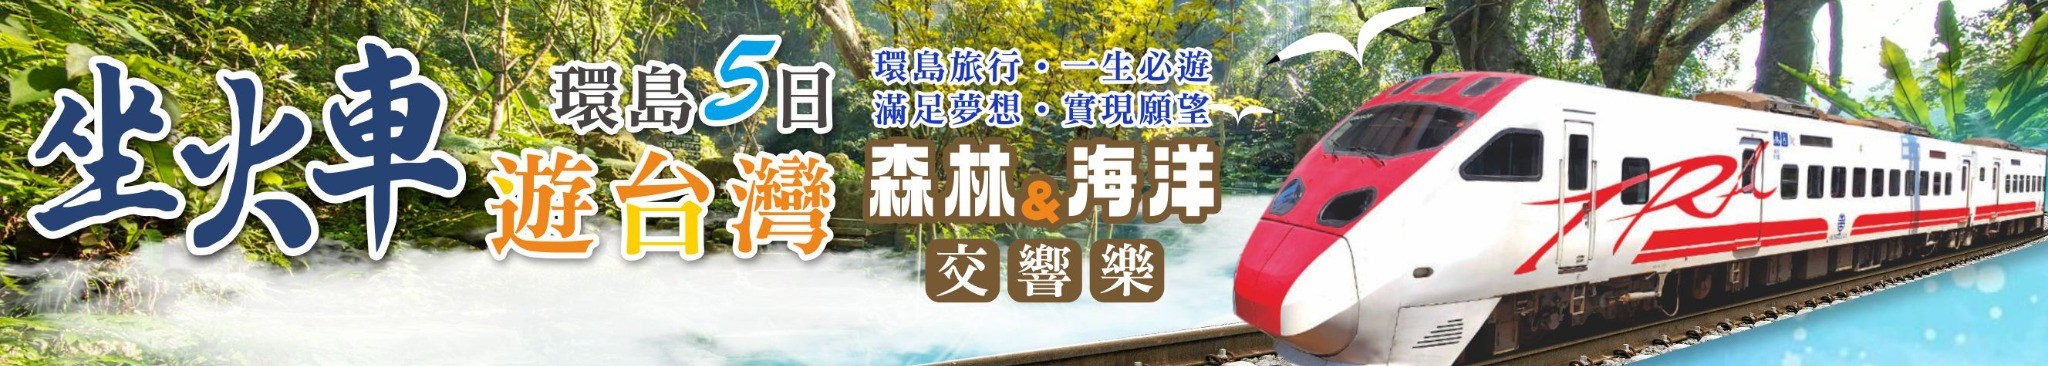 坐火車遊台灣環島5日 「森林與海洋交響樂」